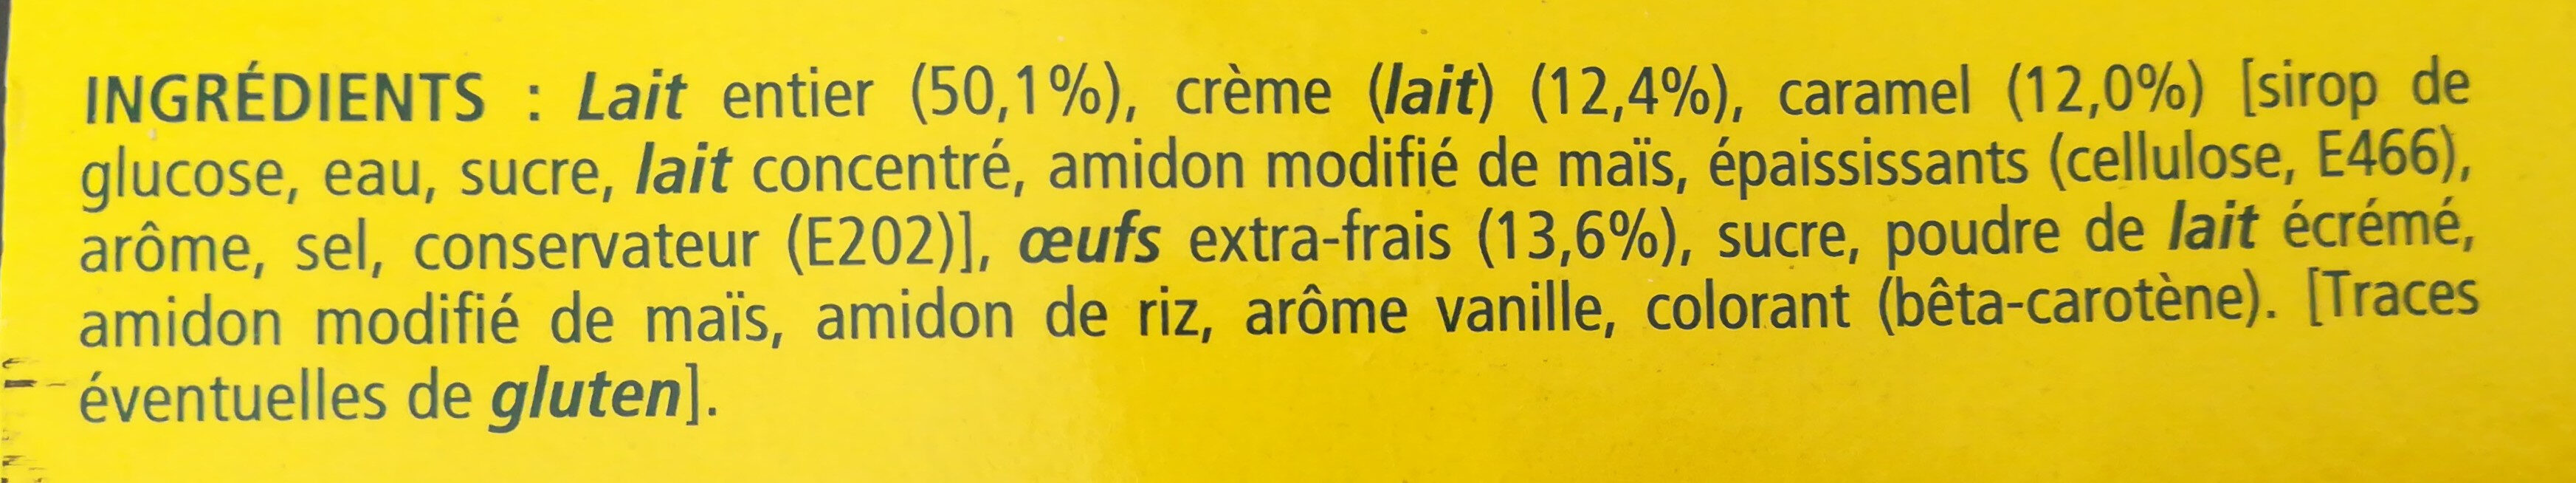 Crème aux oeufs sur lit de caramel - Ingrediënten - fr